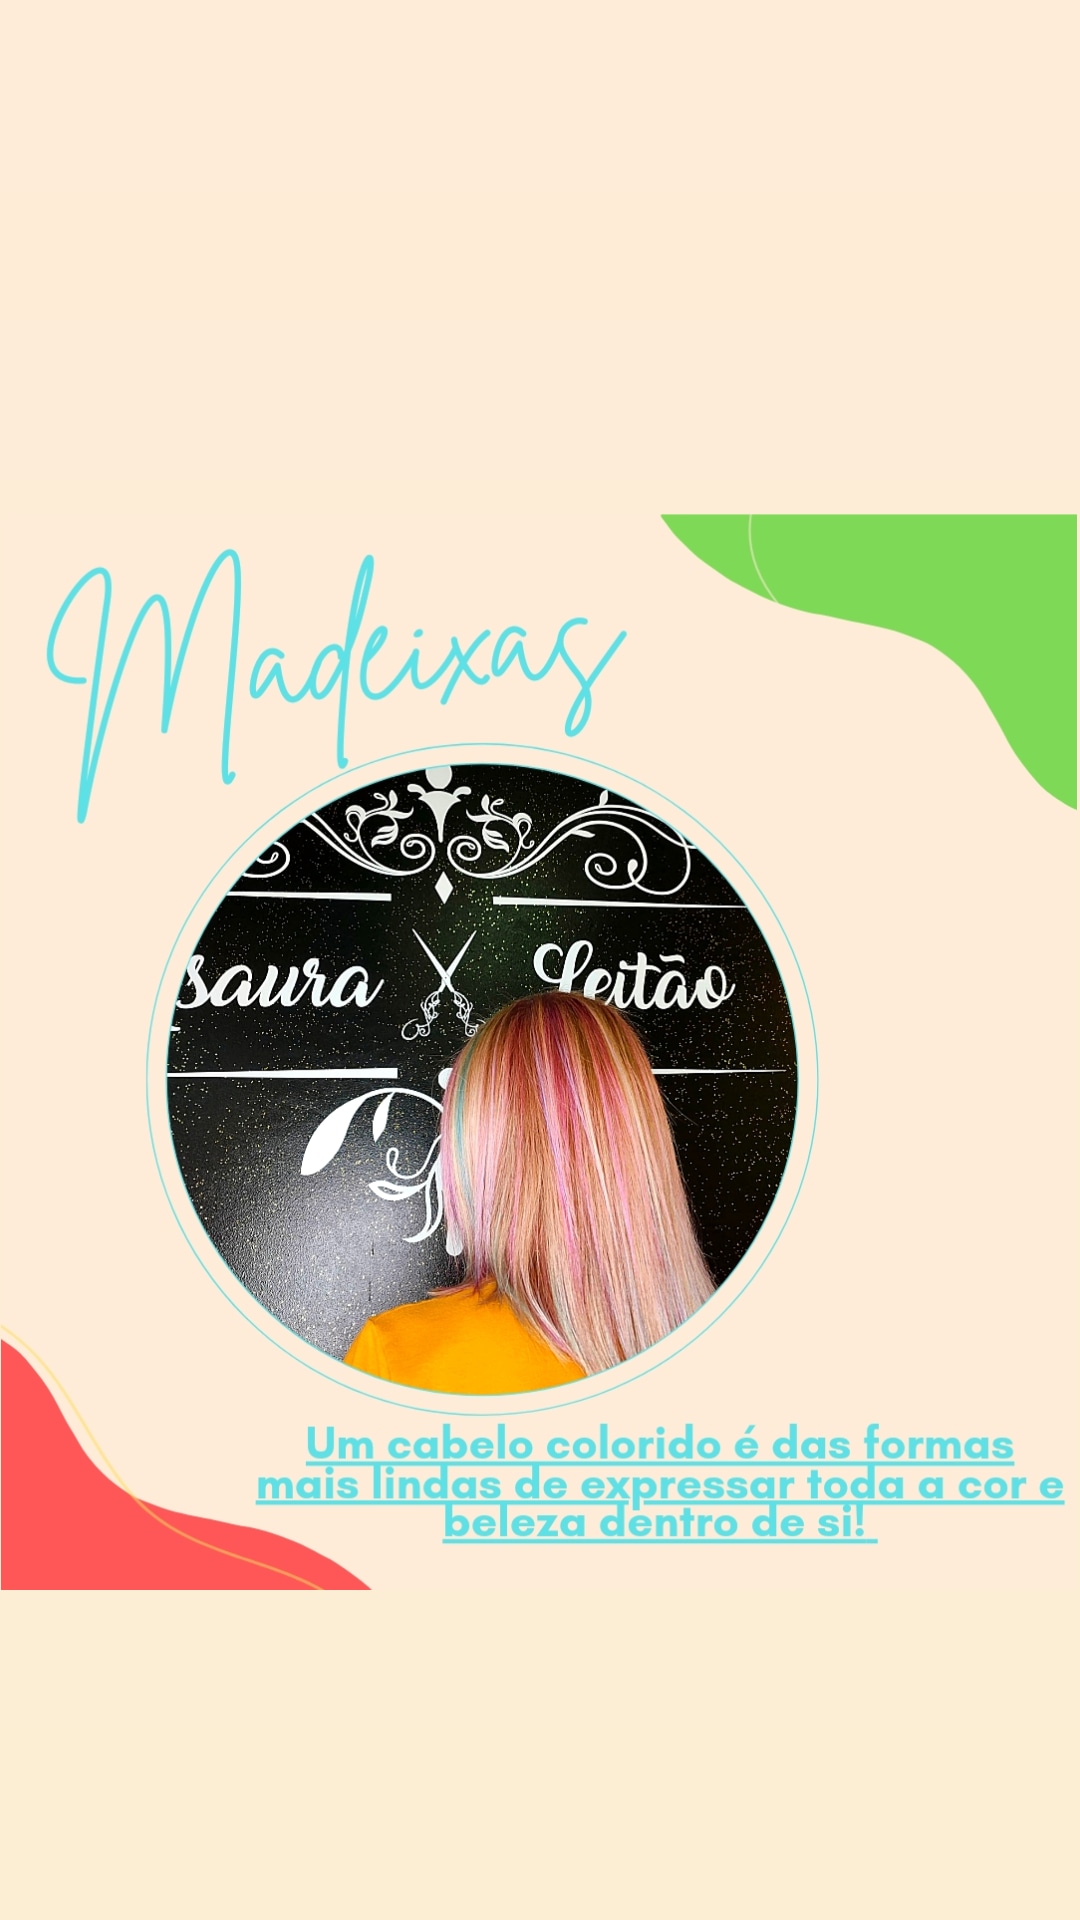 Images Zaura Leitão cabeleireiro e estética